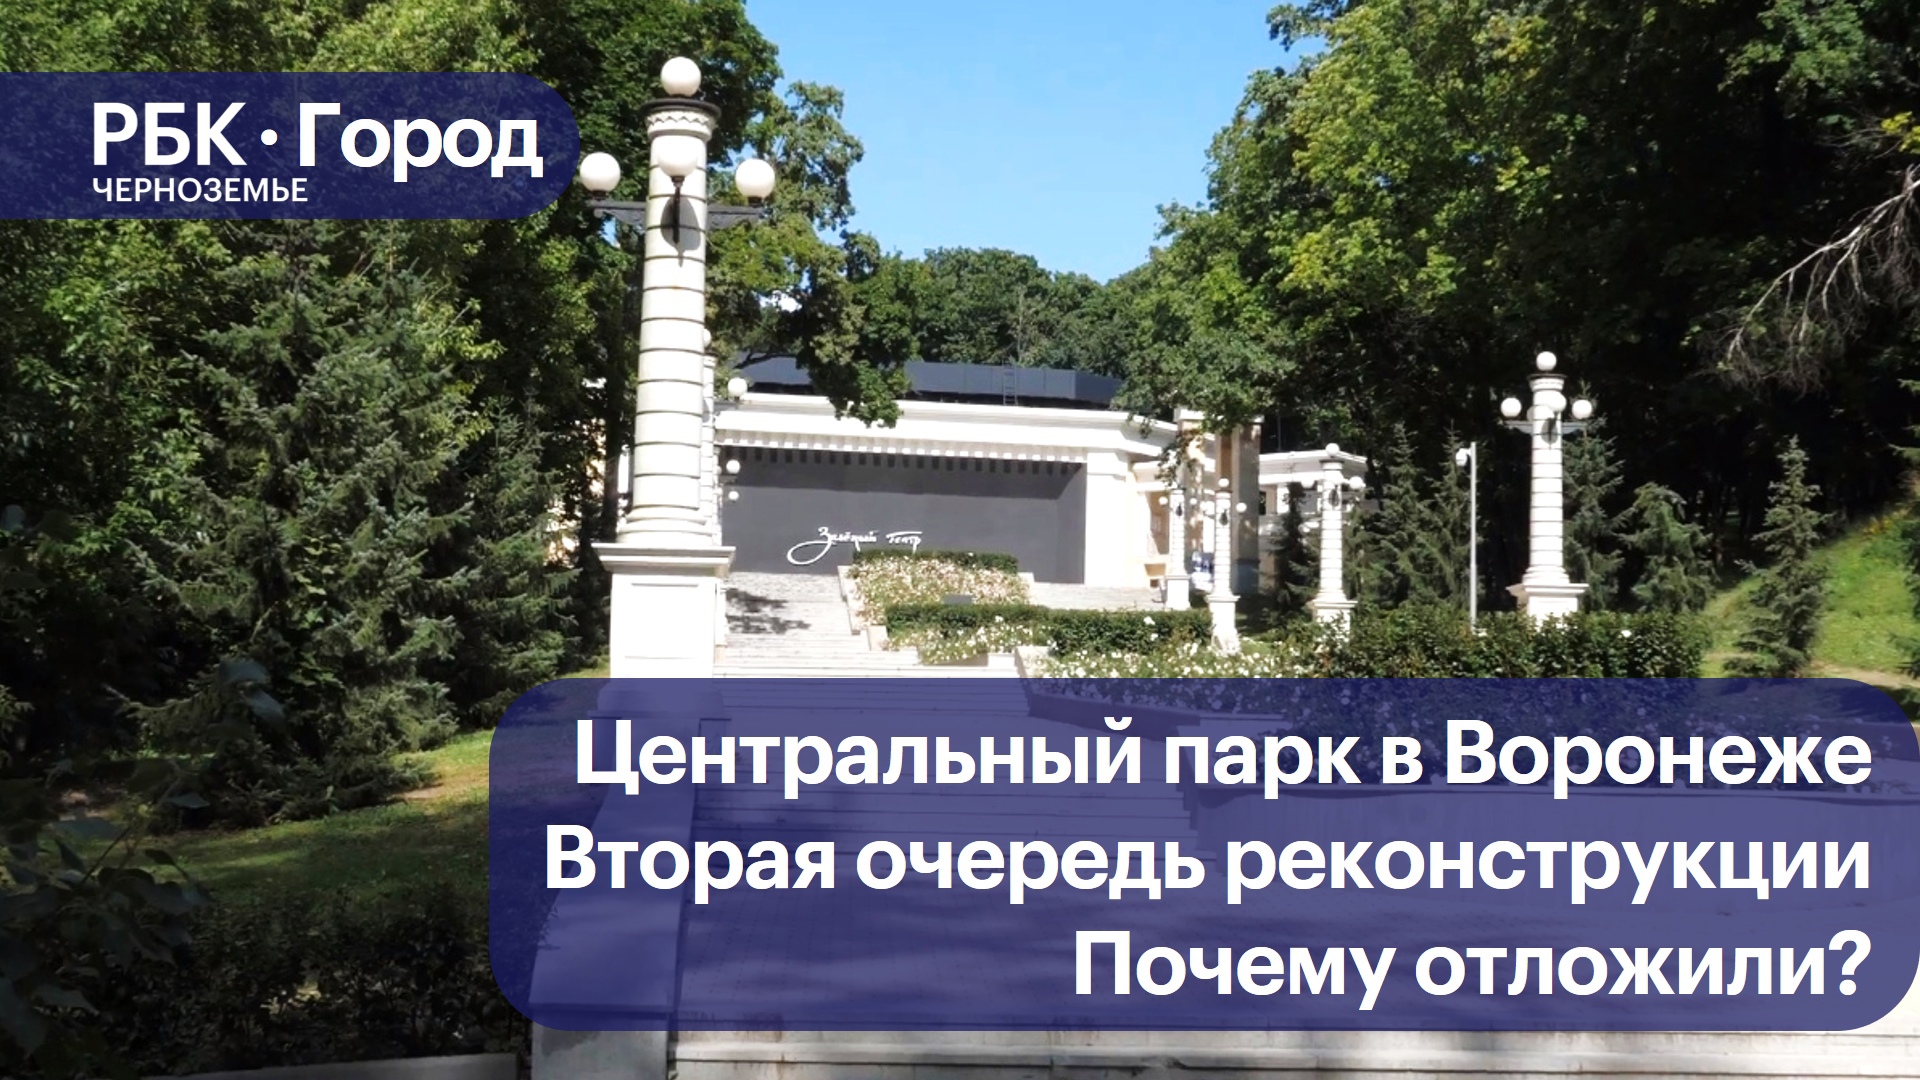 В Воронеже реконструкцию второй очереди Центрального парка отложили на неопределенное время